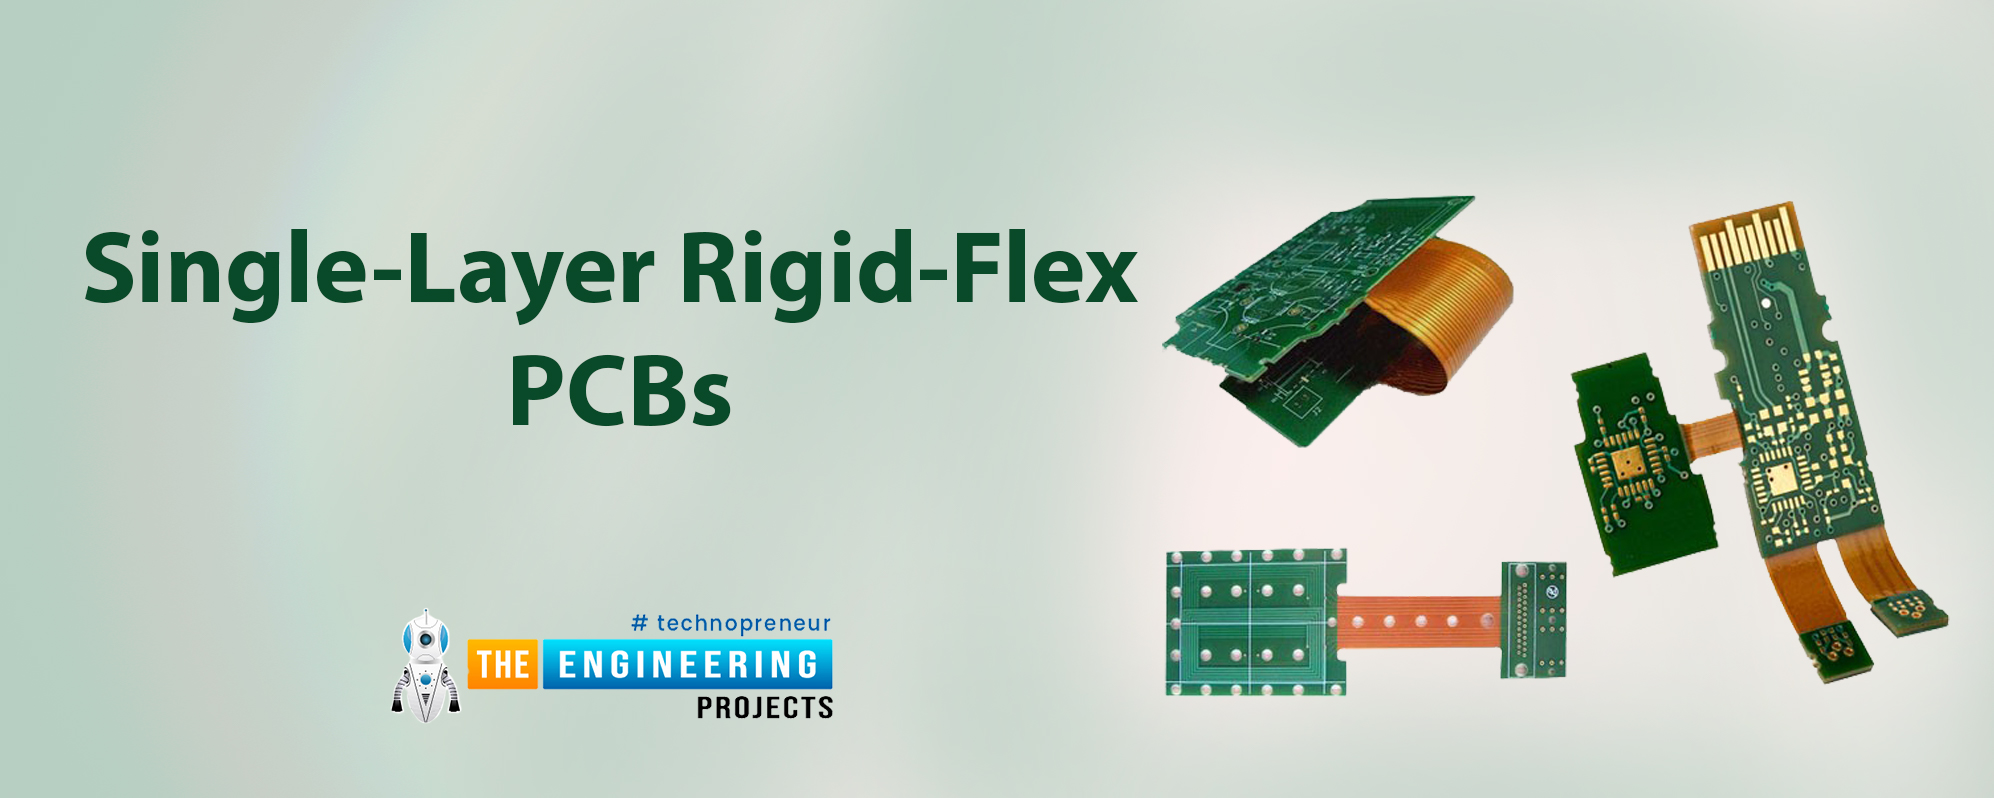 Single-layer PCB, Single-layer Definition, Construction of single layer, Types of singles layer PCB, single-layer rigid-flex PCBs